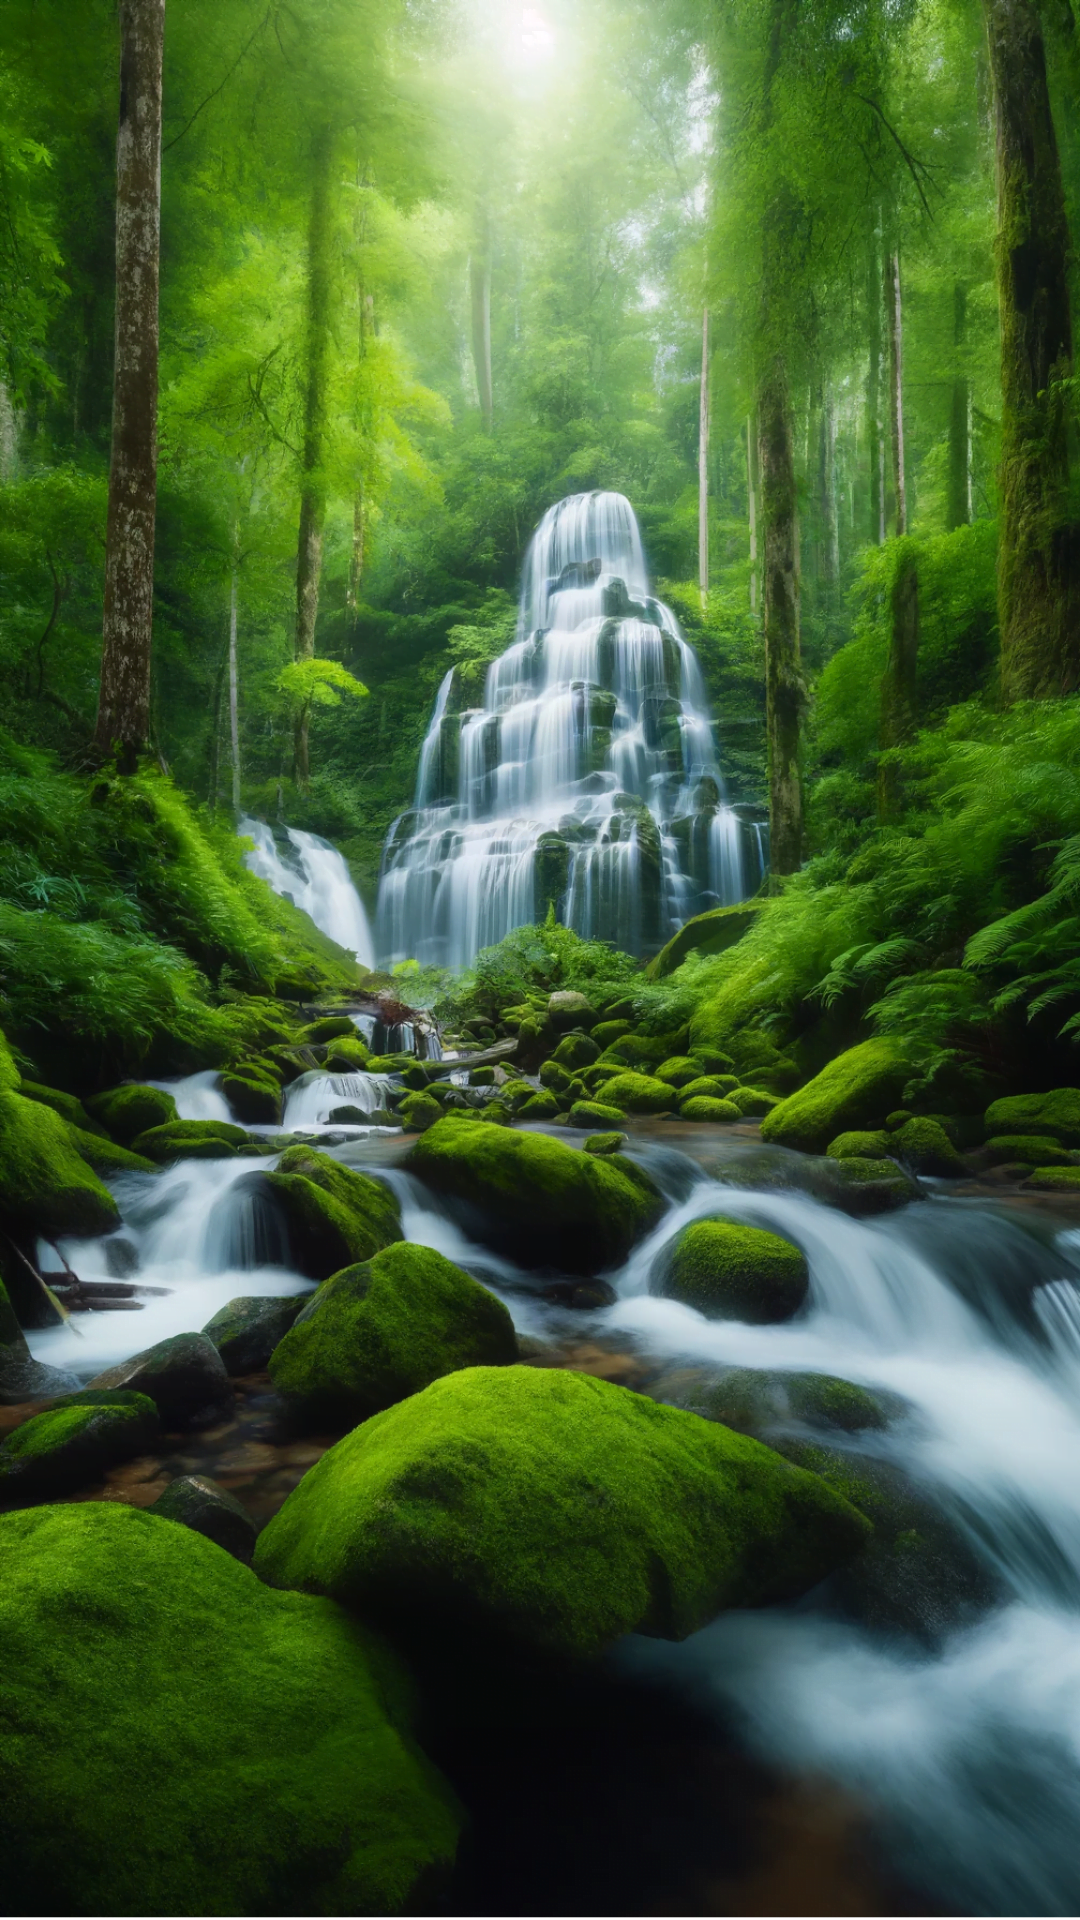 Serene Waterfall - Calming Nature Background